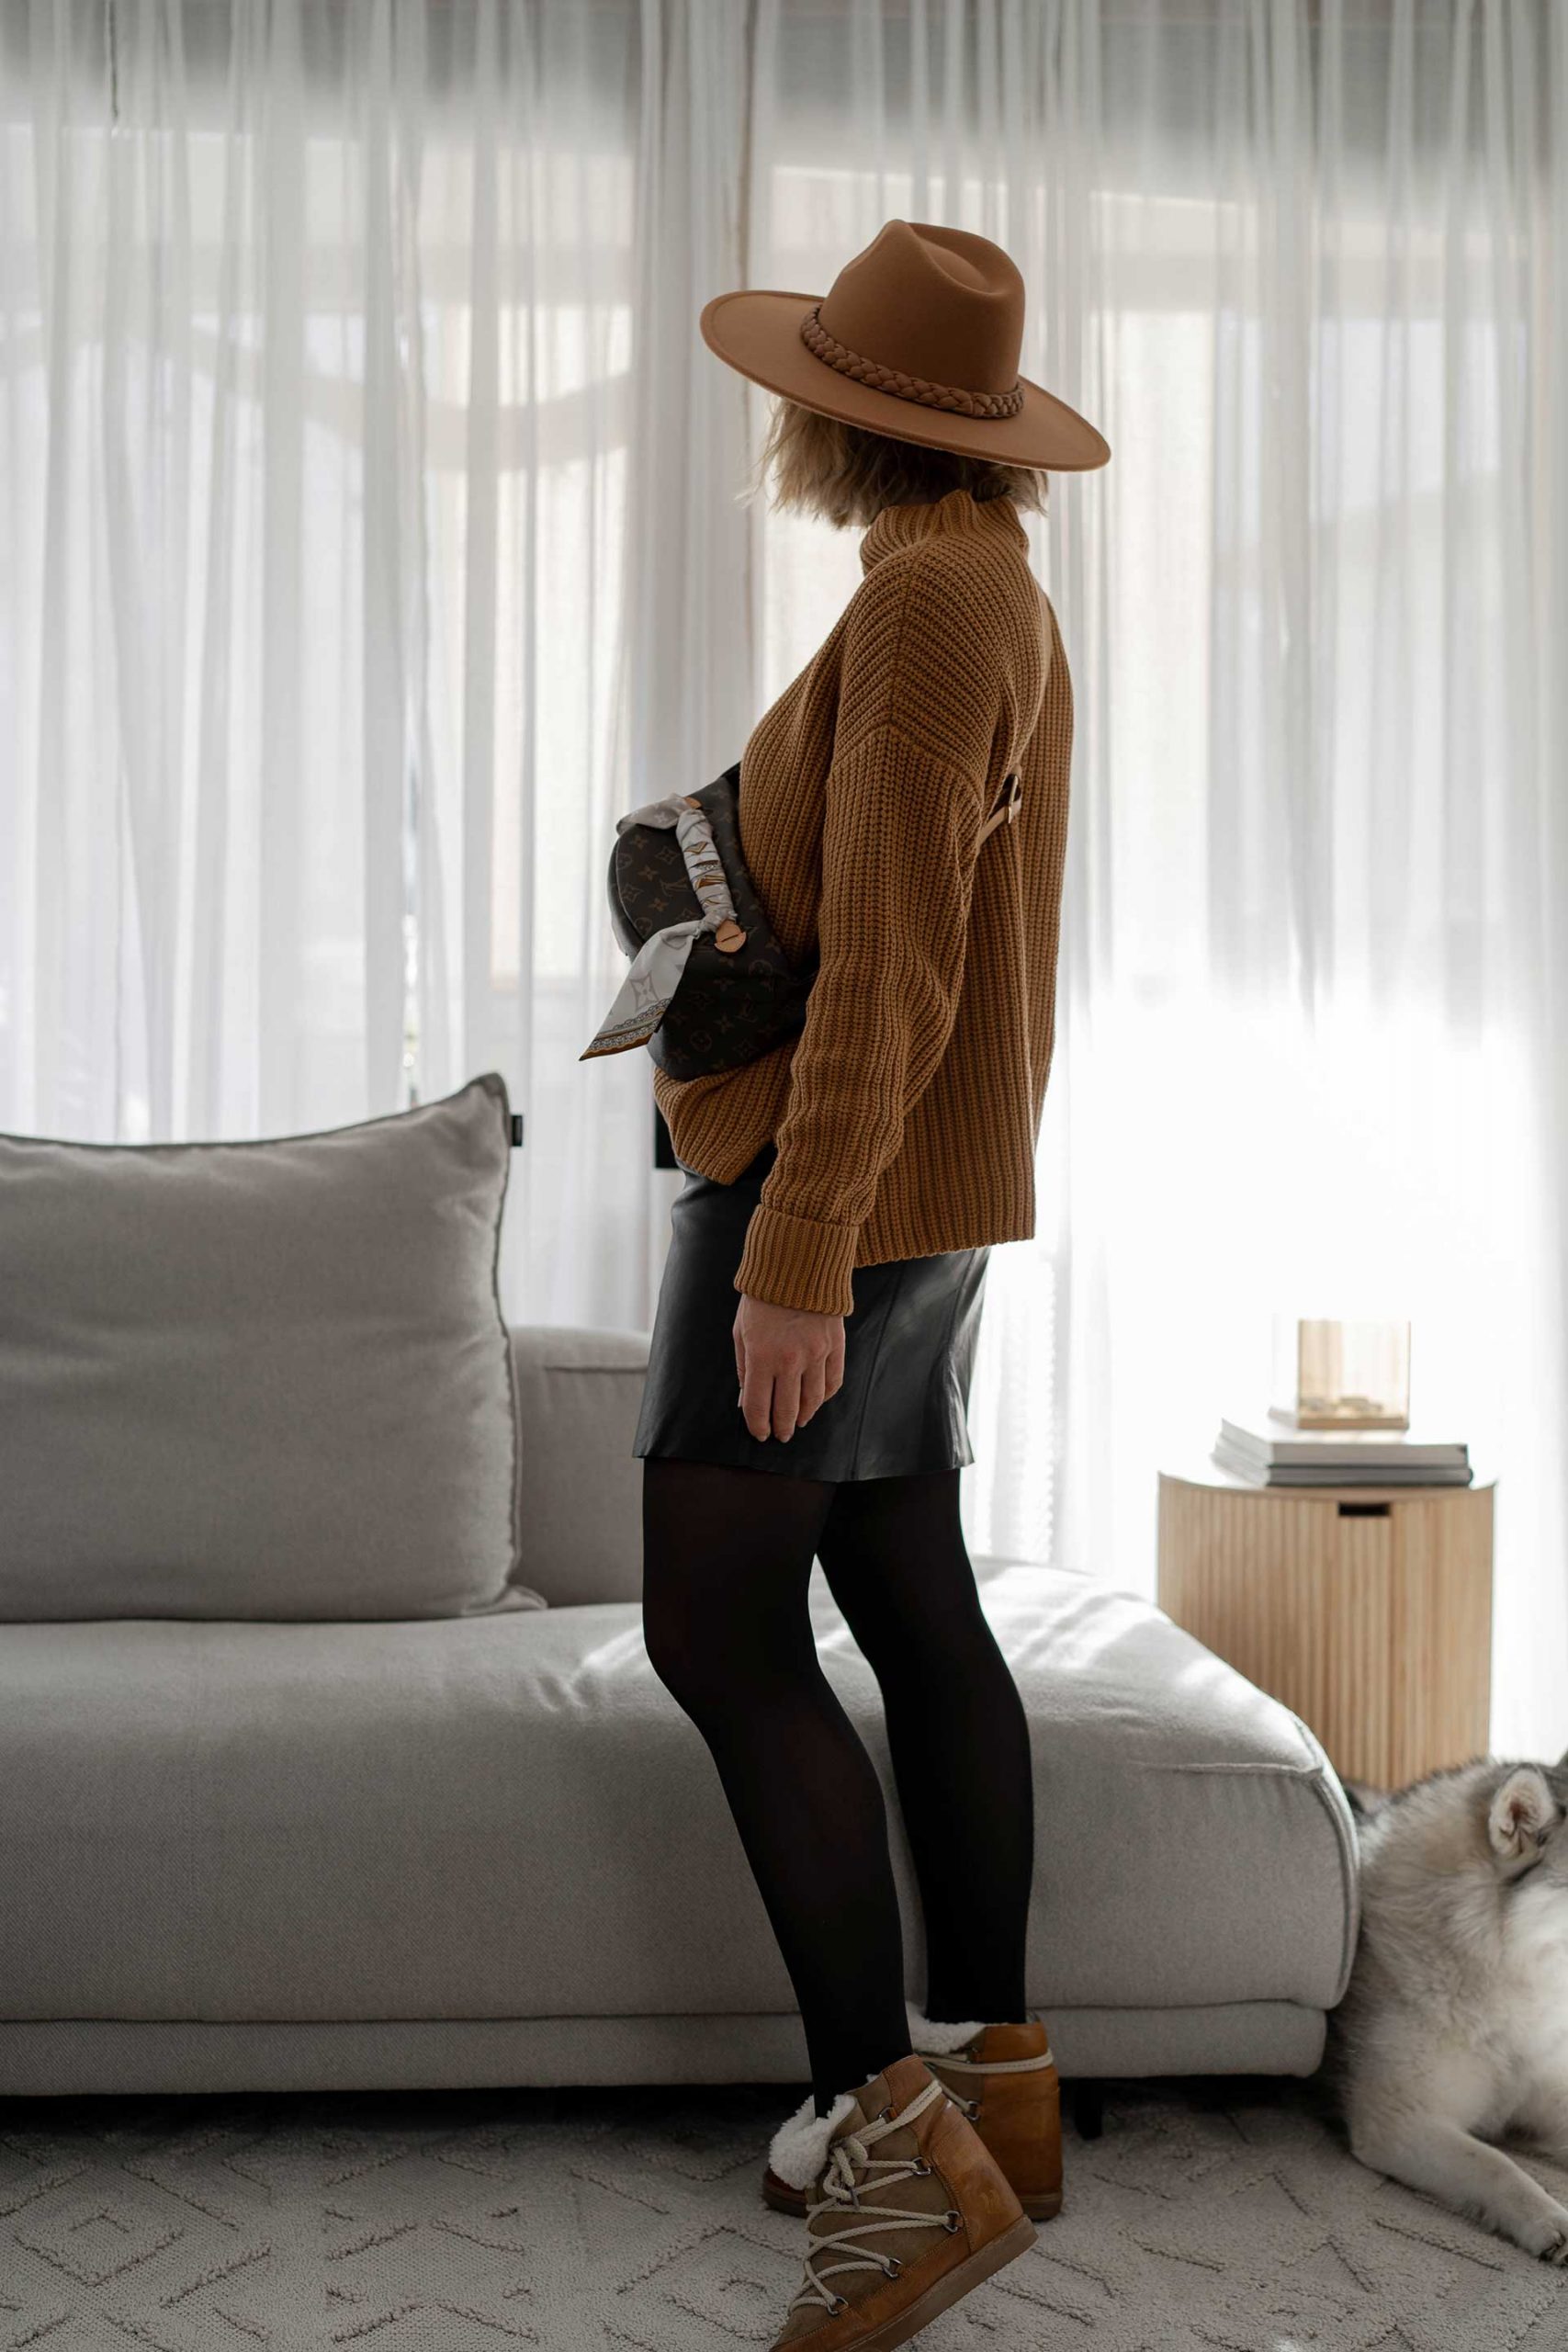 Anzeige. Was ziehe ich morgen an? Wie wäre es mit einem Outfit mit schwarzem Lederrock? Ich zeige dir 3 Outfit-Ideen und gebe dir 8 generelle Styling-Tipps am Modeblog whoismocca.com